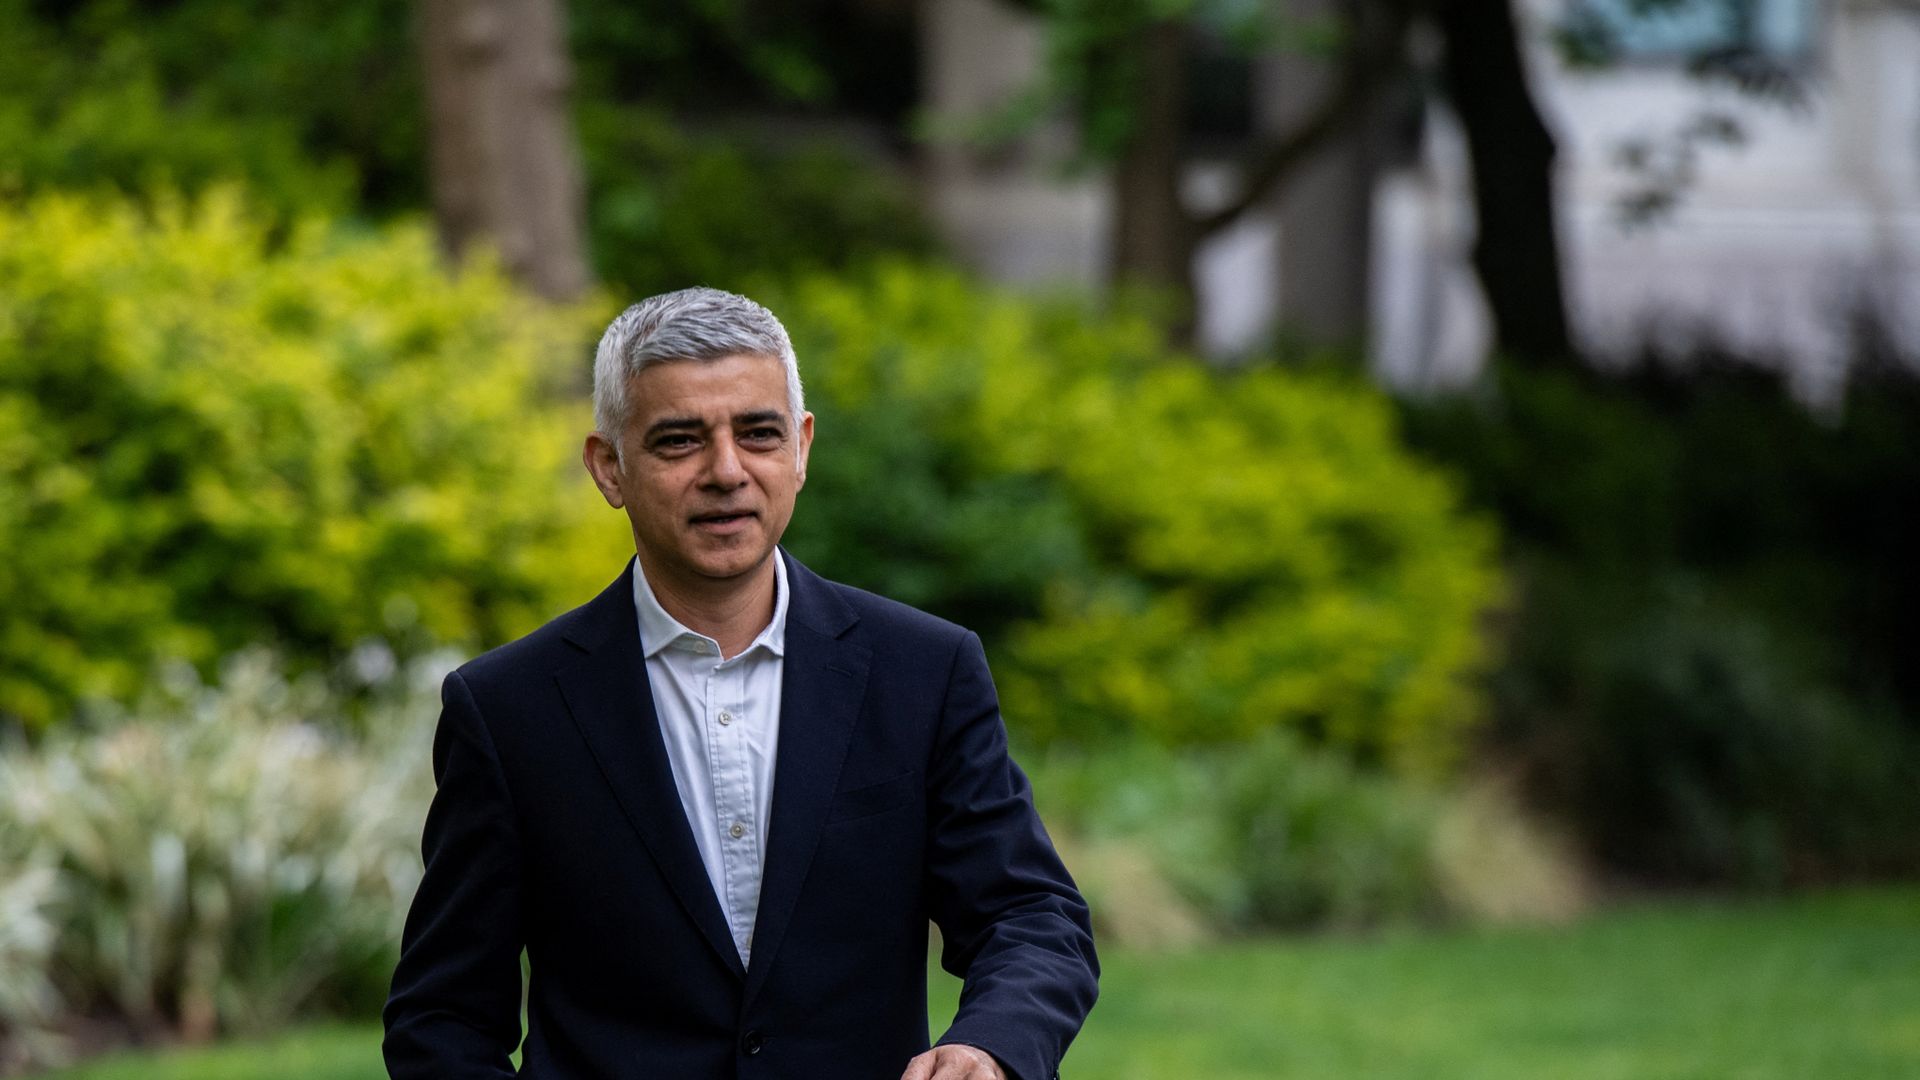 großbritannien: sadiq khan als bürgermeister von london wiedergewählt